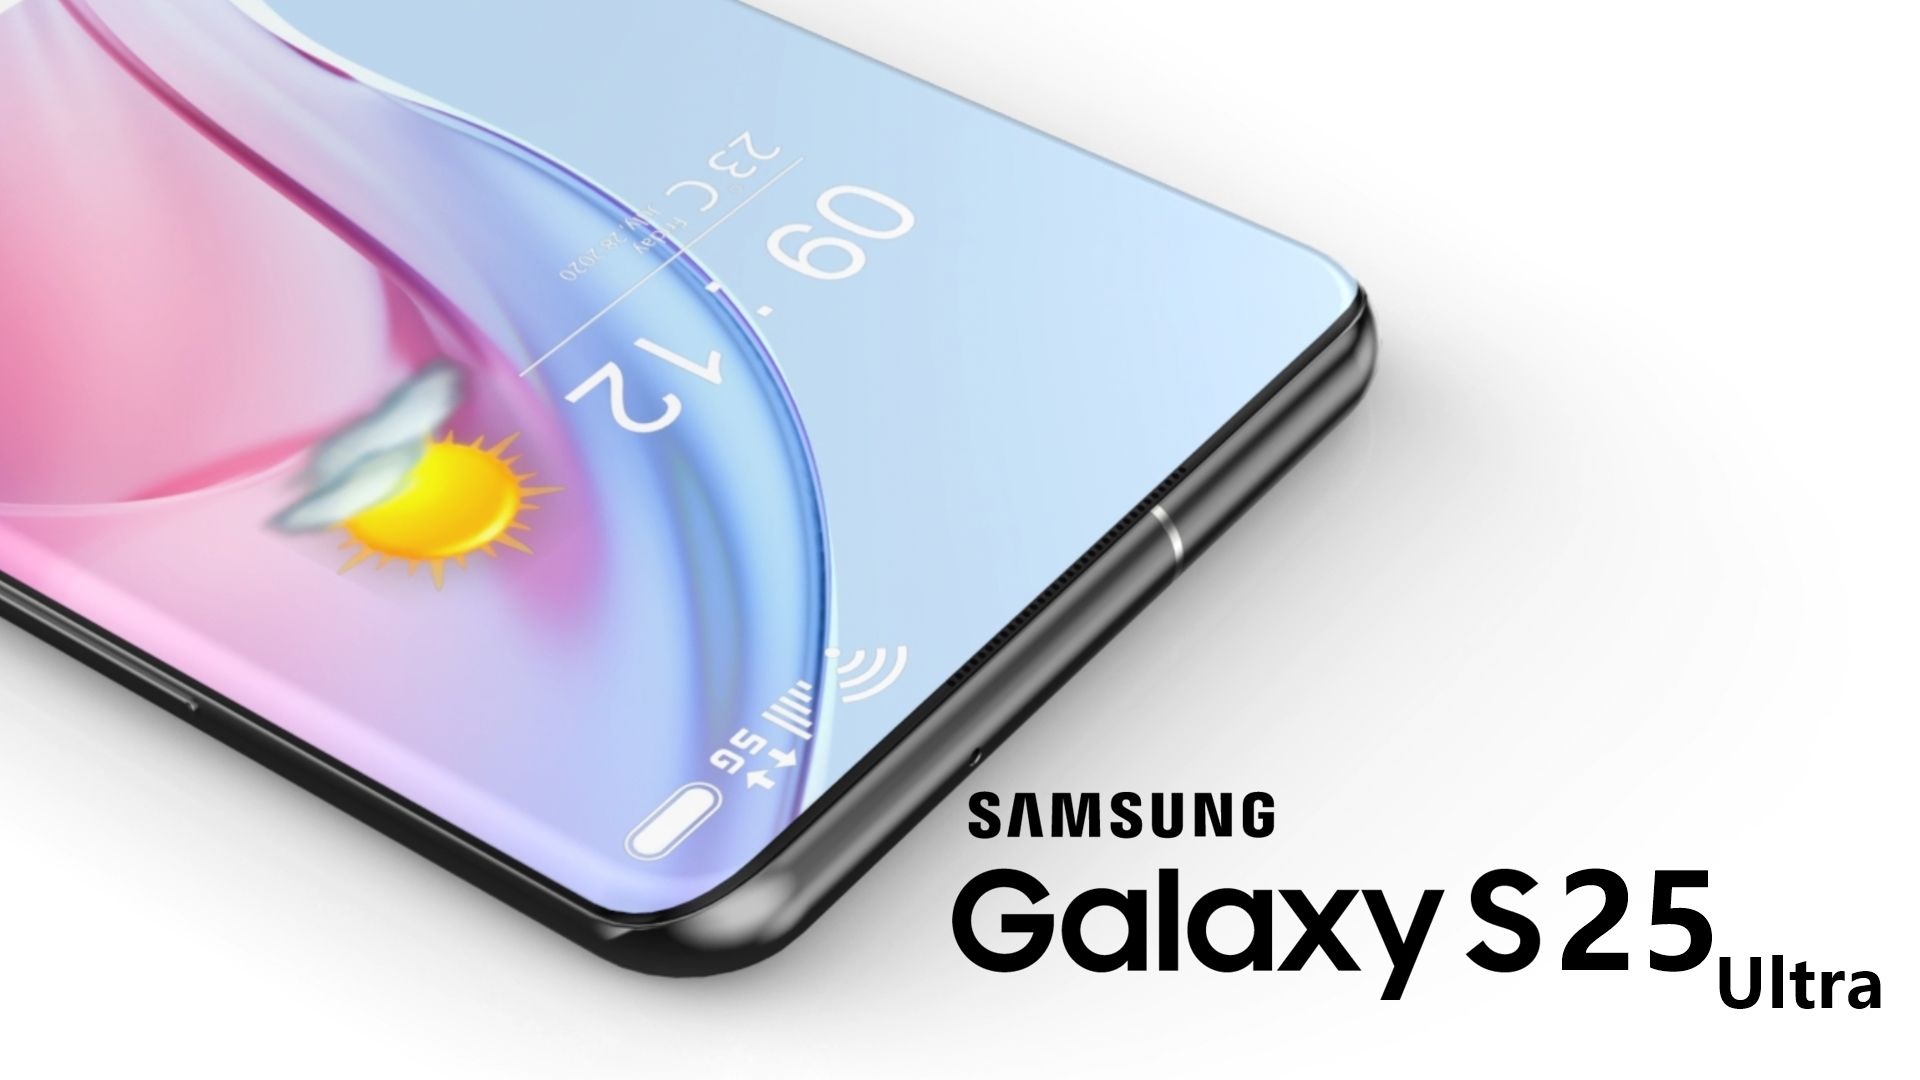 Samsung GALAXY S25 Noticias IMPORTANTES que alegran a millones de fanáticos de Samsung World